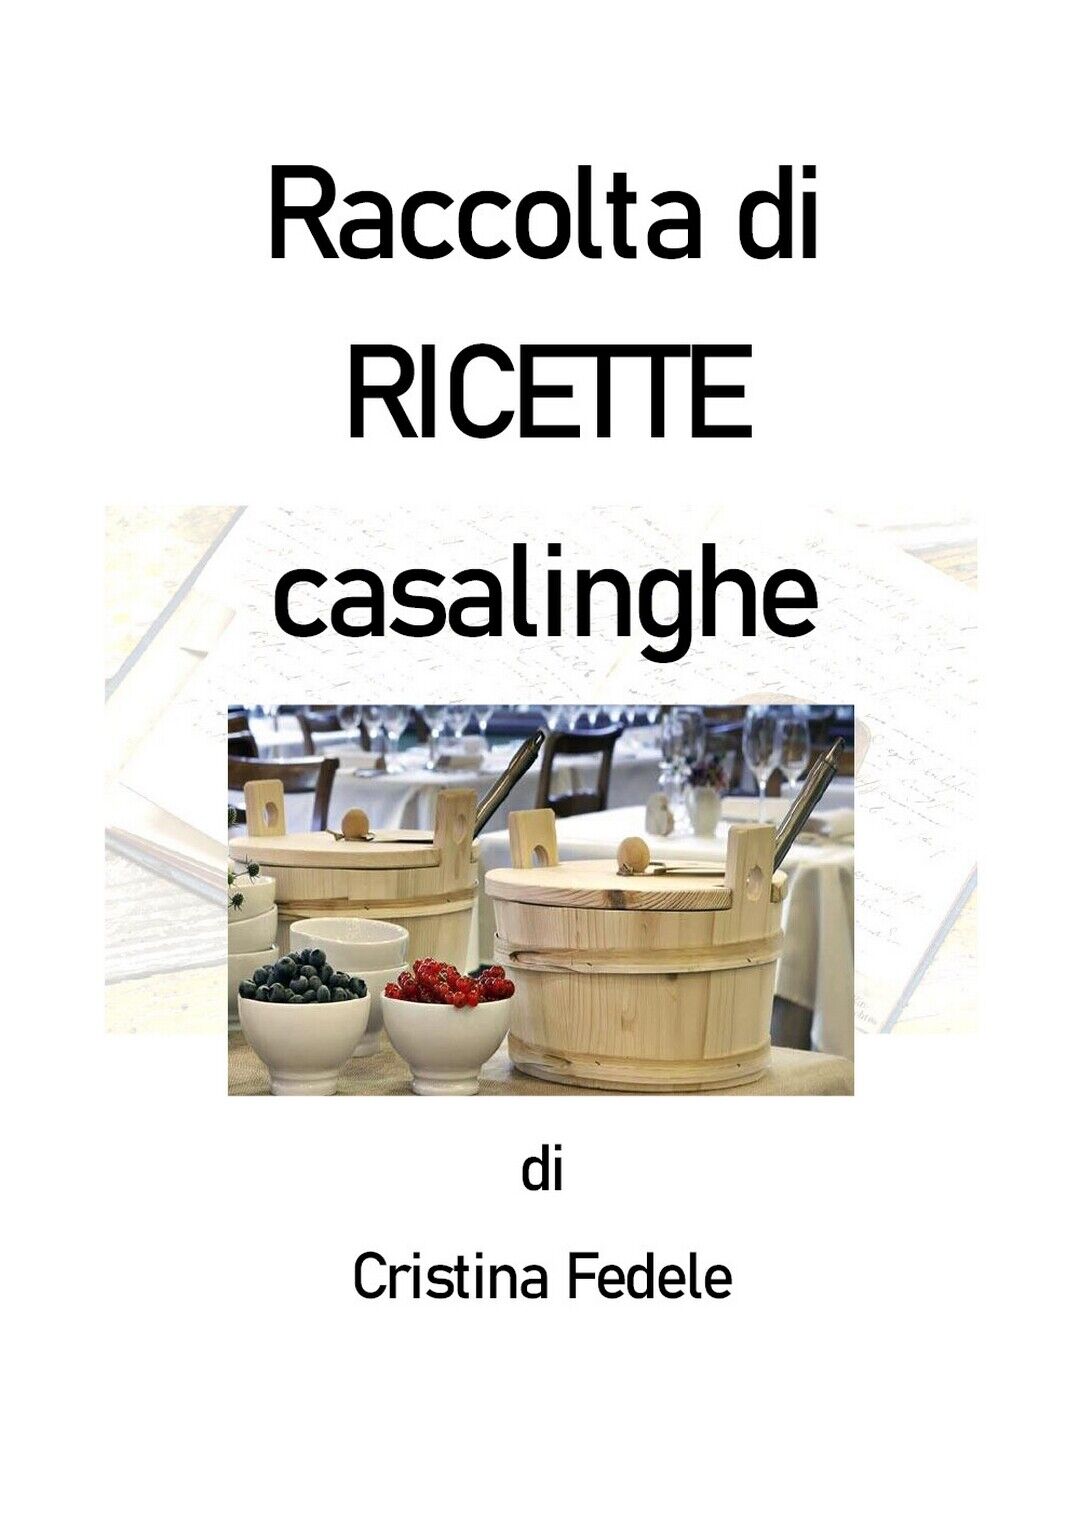 Raccolta di ricette casalinghe  di Cristina Fedele,  2020,  Youcanprint libro usato